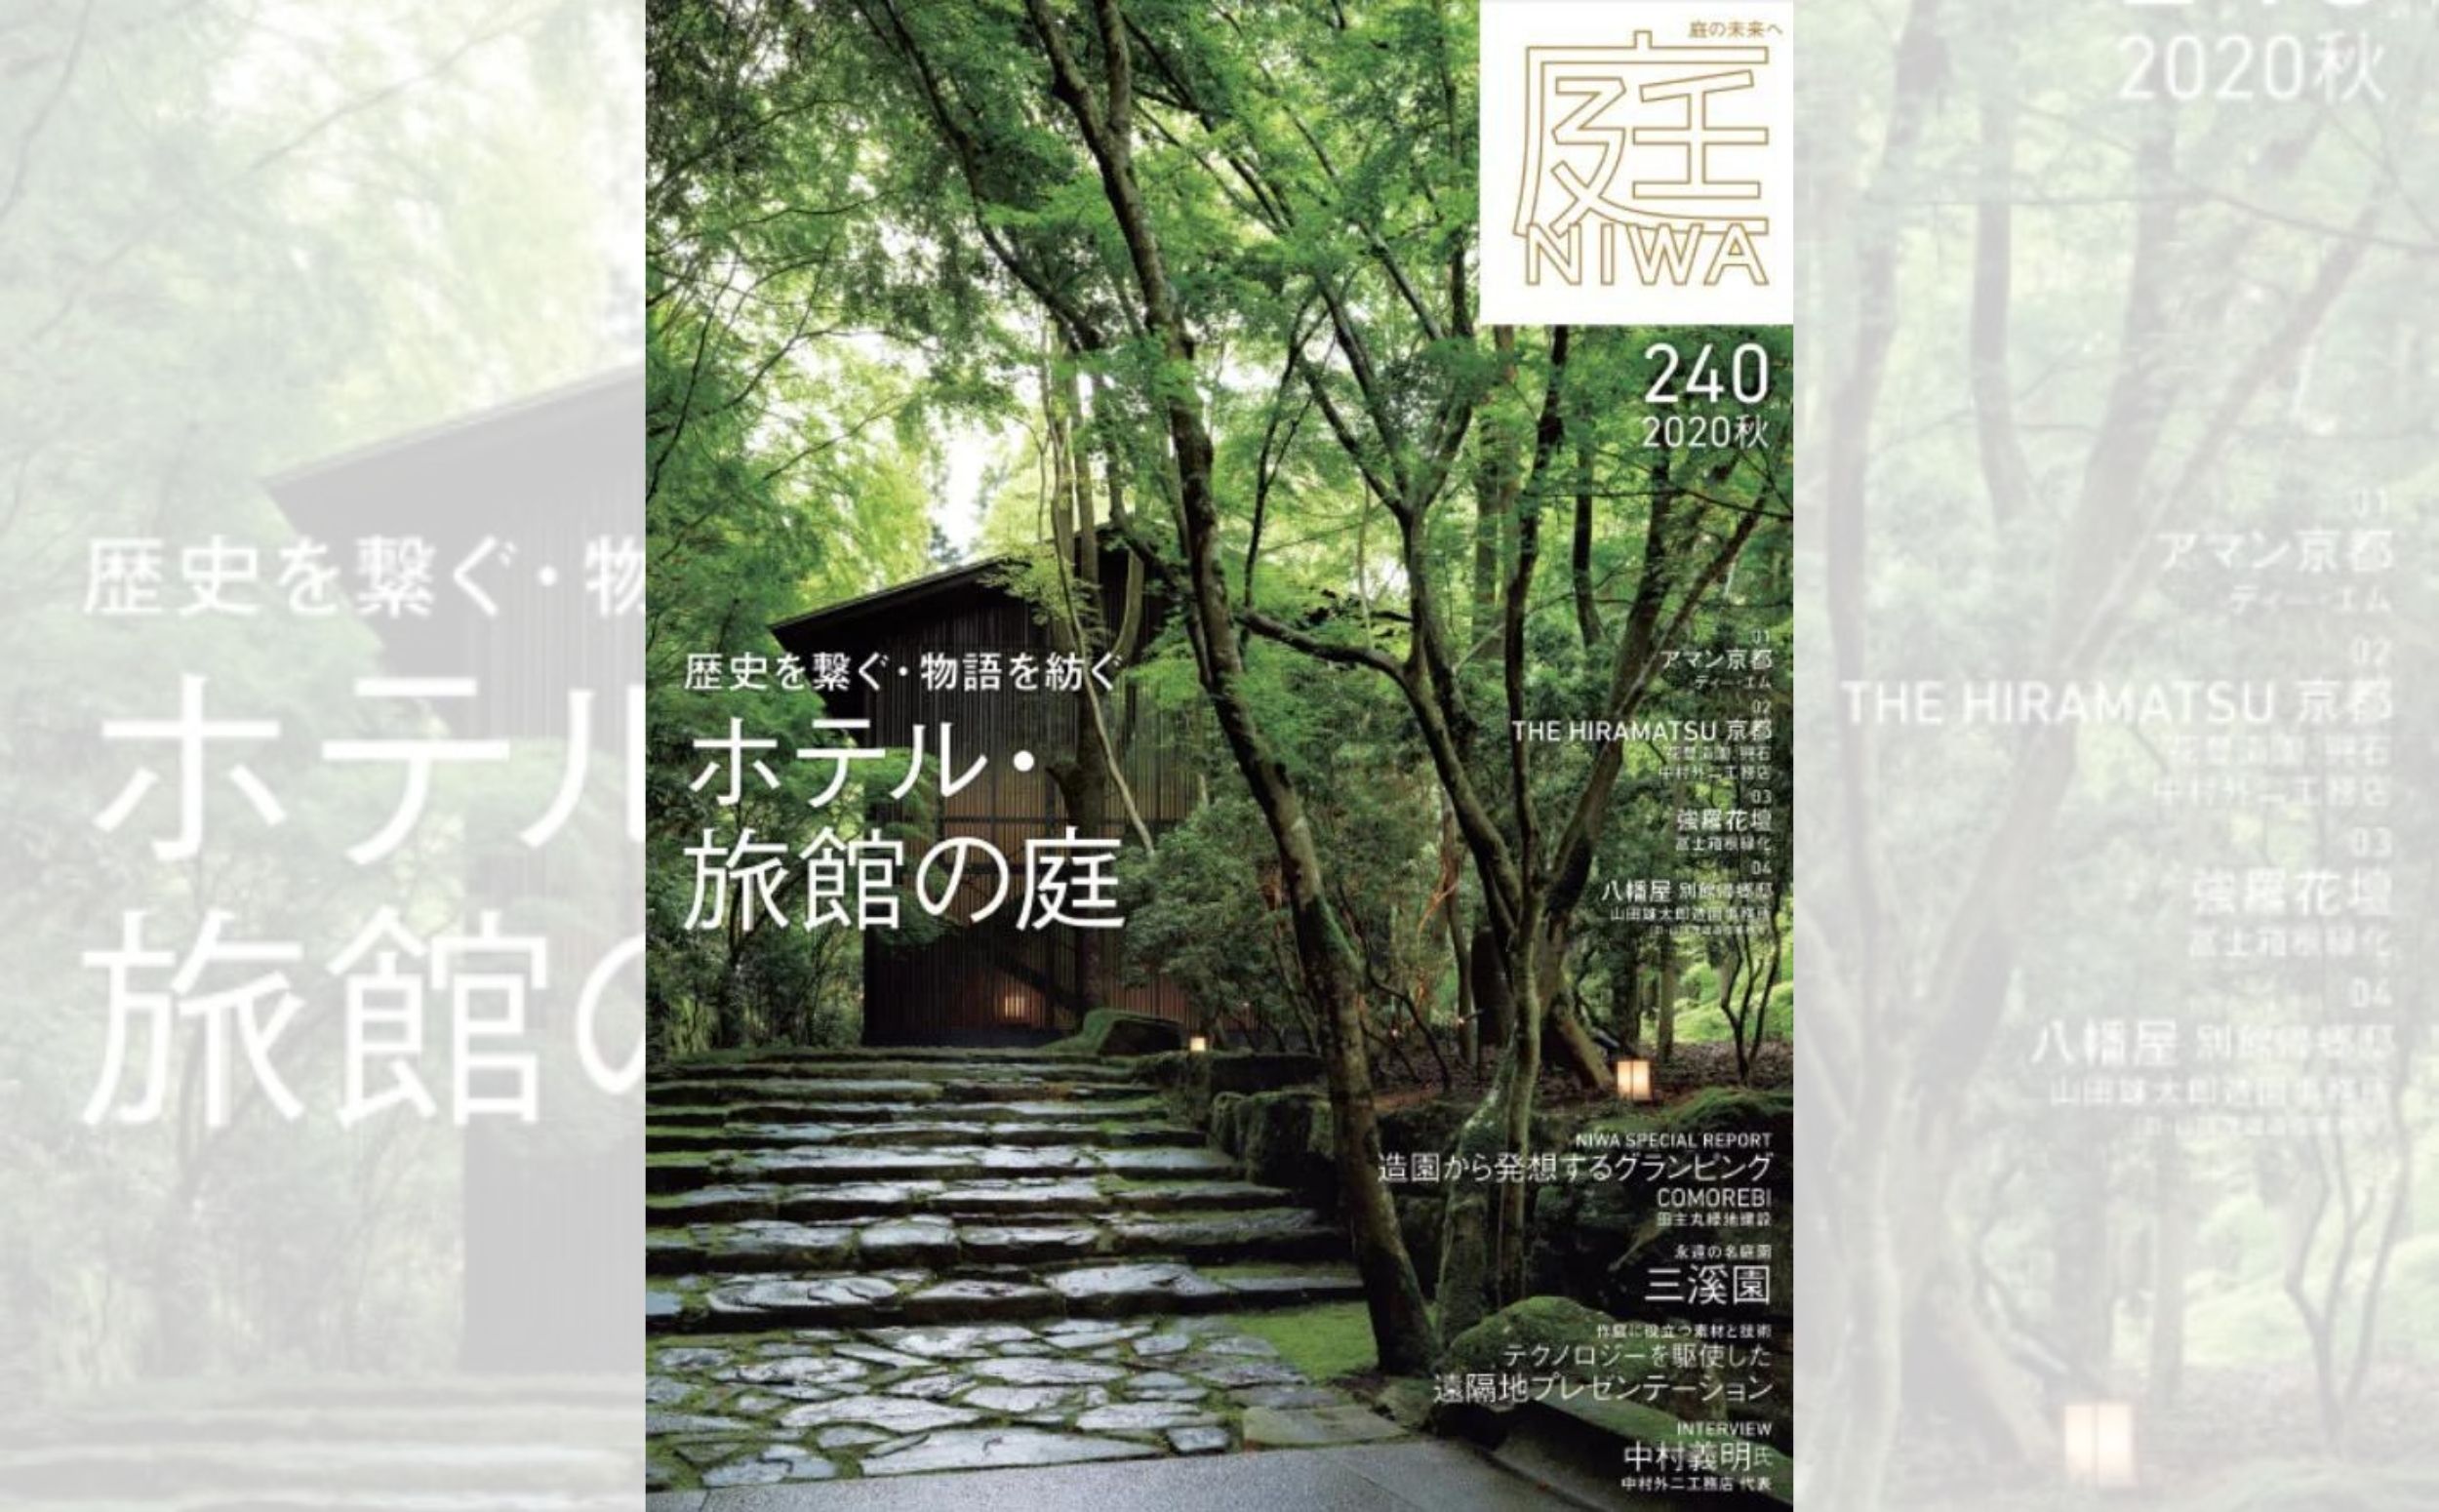 庭NIWA　No.240 2020秋号 歴史を繋ぐ・物語を紡ぐ「ホテル・旅館」の庭